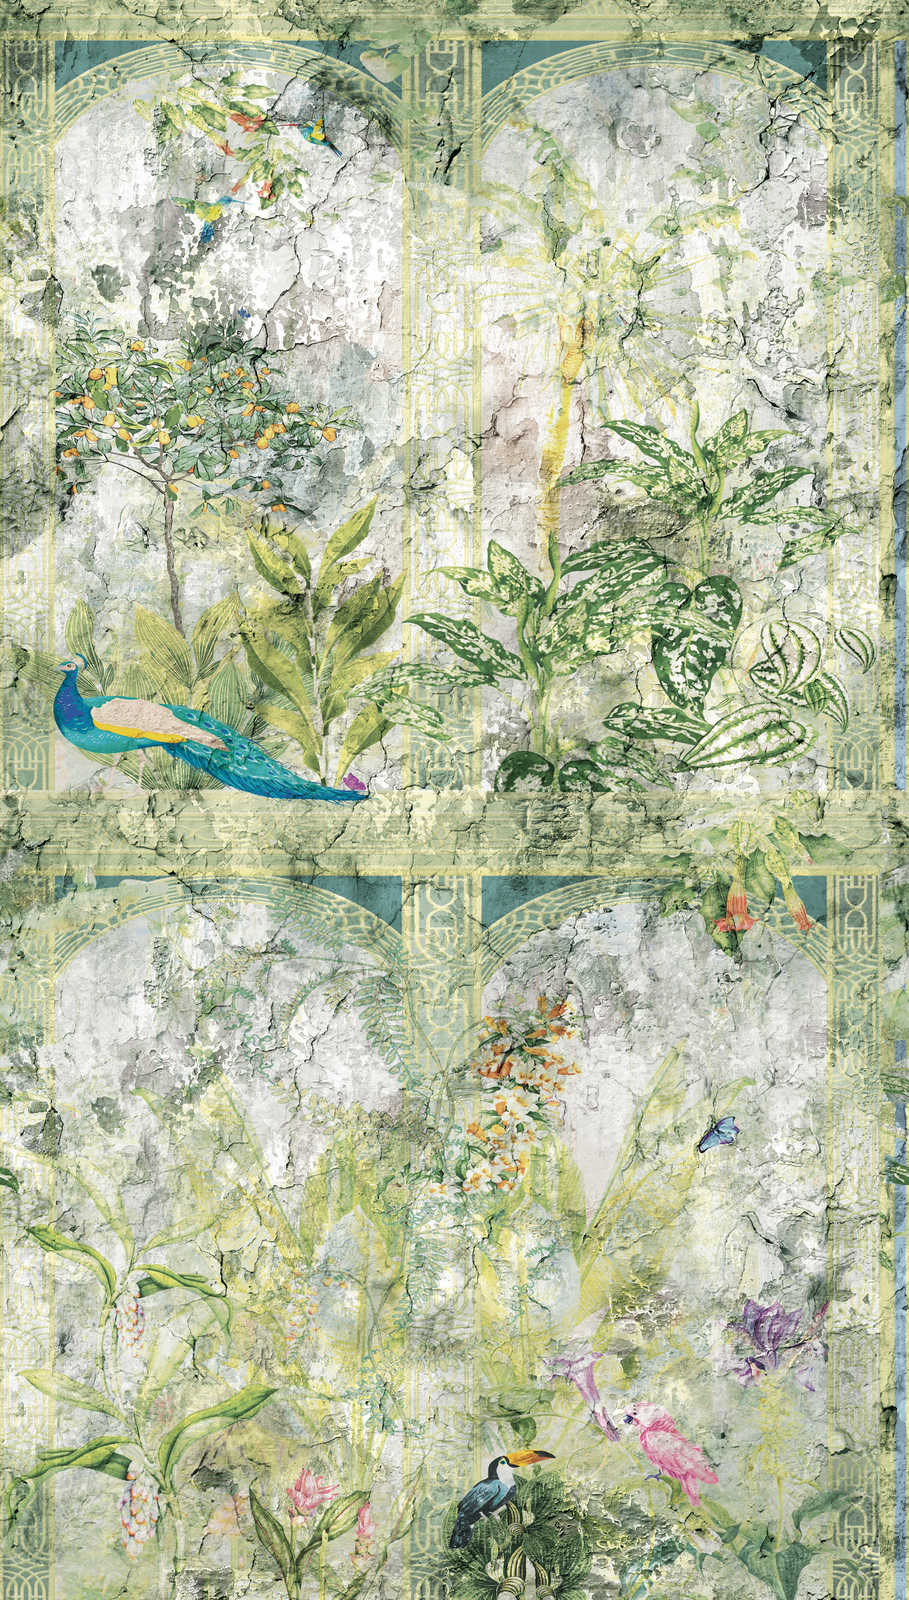             Onderlaag behang met jungle look en vogels in vintage stijl - groen, blauw, grijs
        